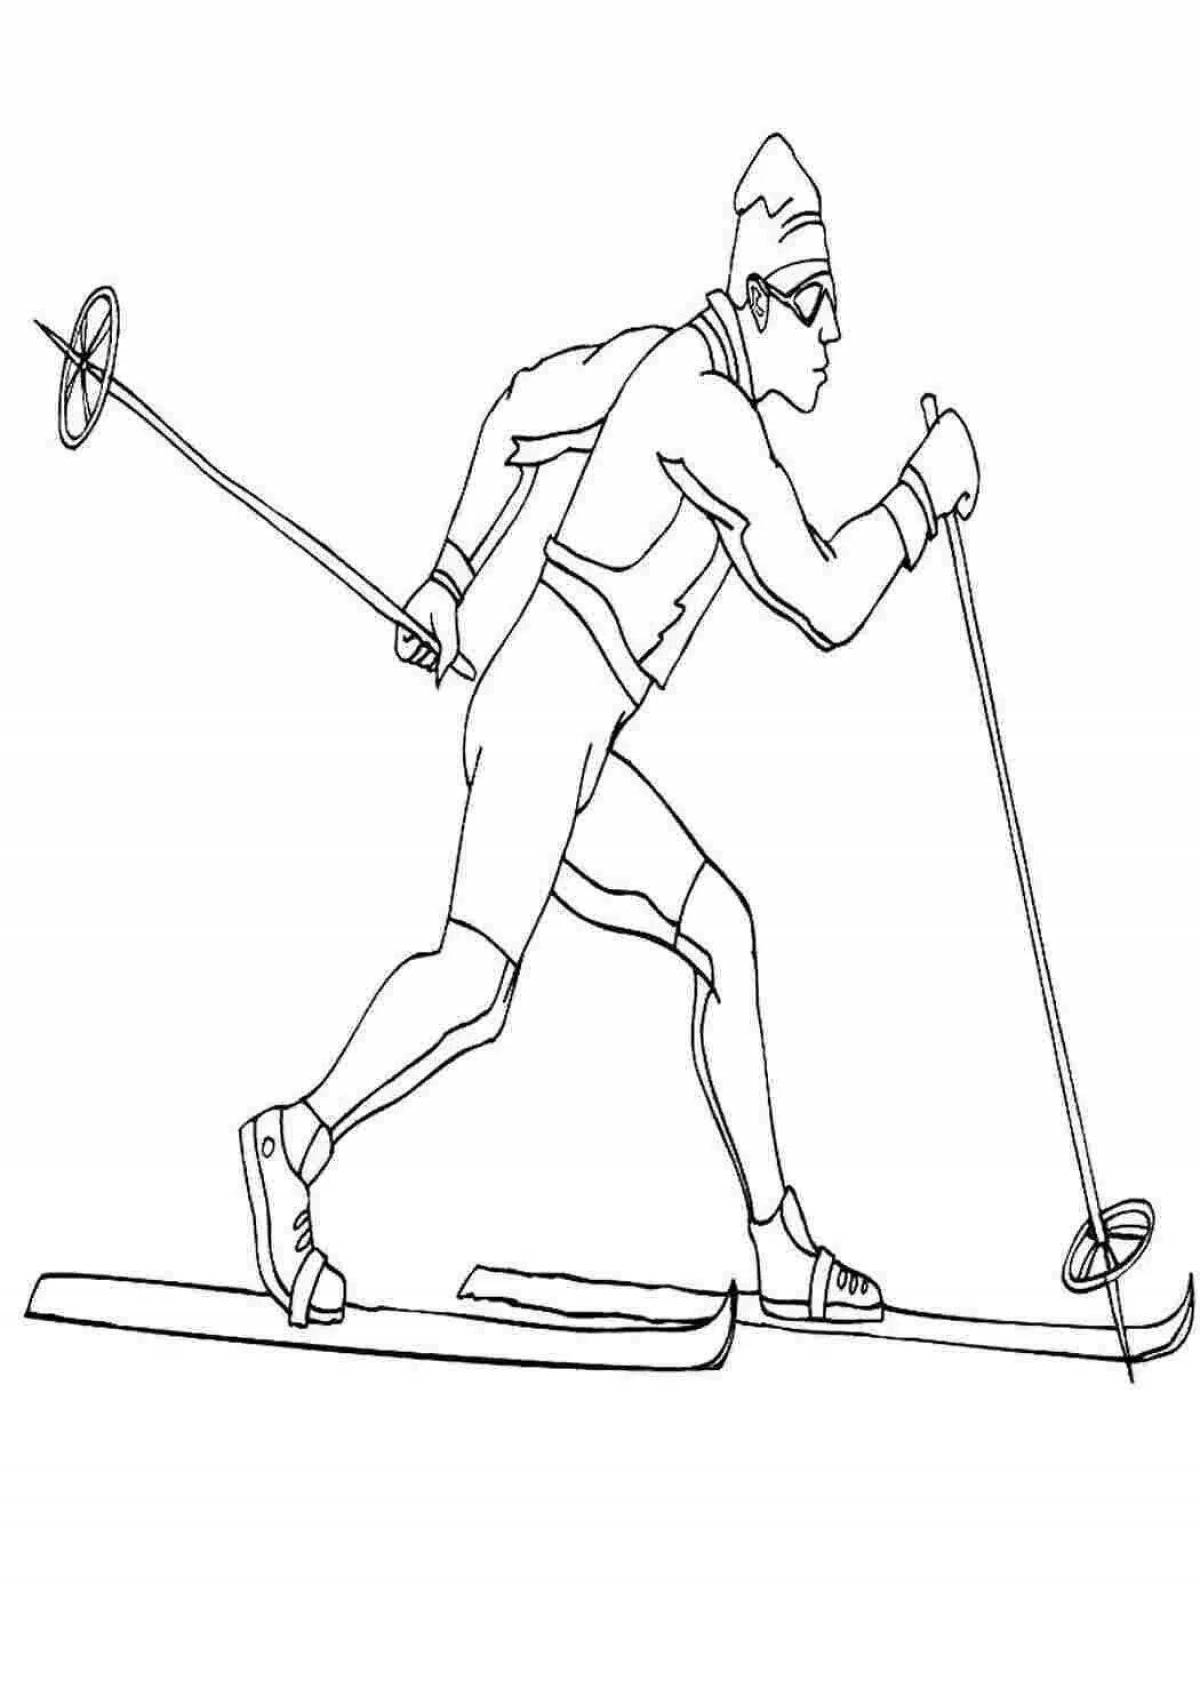 Kaleidoscopic man on skis